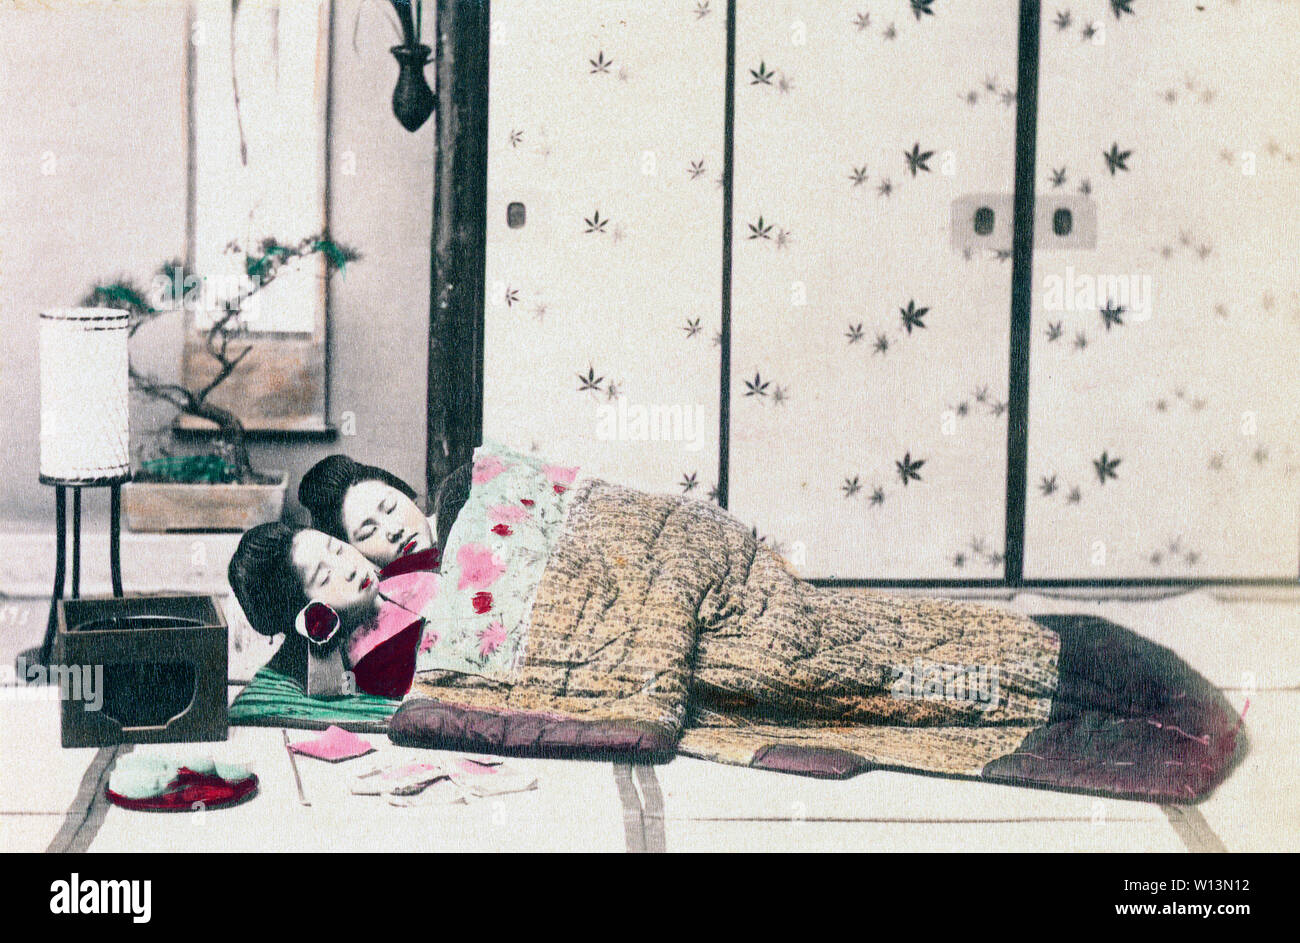 1890s Japan - Japanische Frauen Schlafen] - Zwei Frau schlafen unter einem  Yogi (schwere Kimono - wie Quilt) auf Tatami (Reis-Strohmatten) im  japanischen Stil. Ihre Köpfe sind auf einem hakomakura (hohen hölzernen